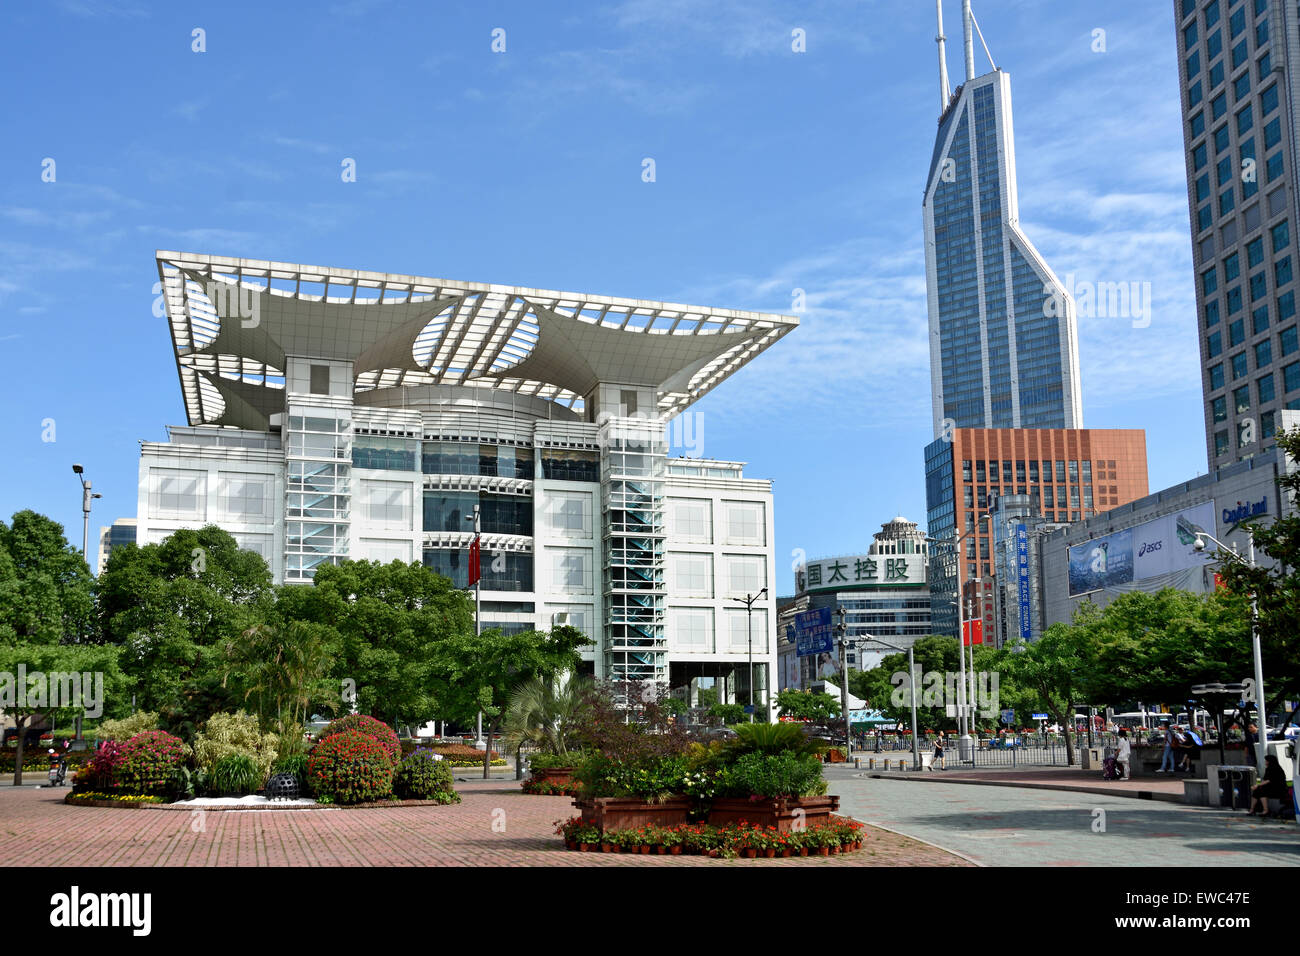 Exposition de la planification urbaine de Shanghai Renmin Park ( ) de la Place du Peuple chinois Chine Huangpu District Banque D'Images